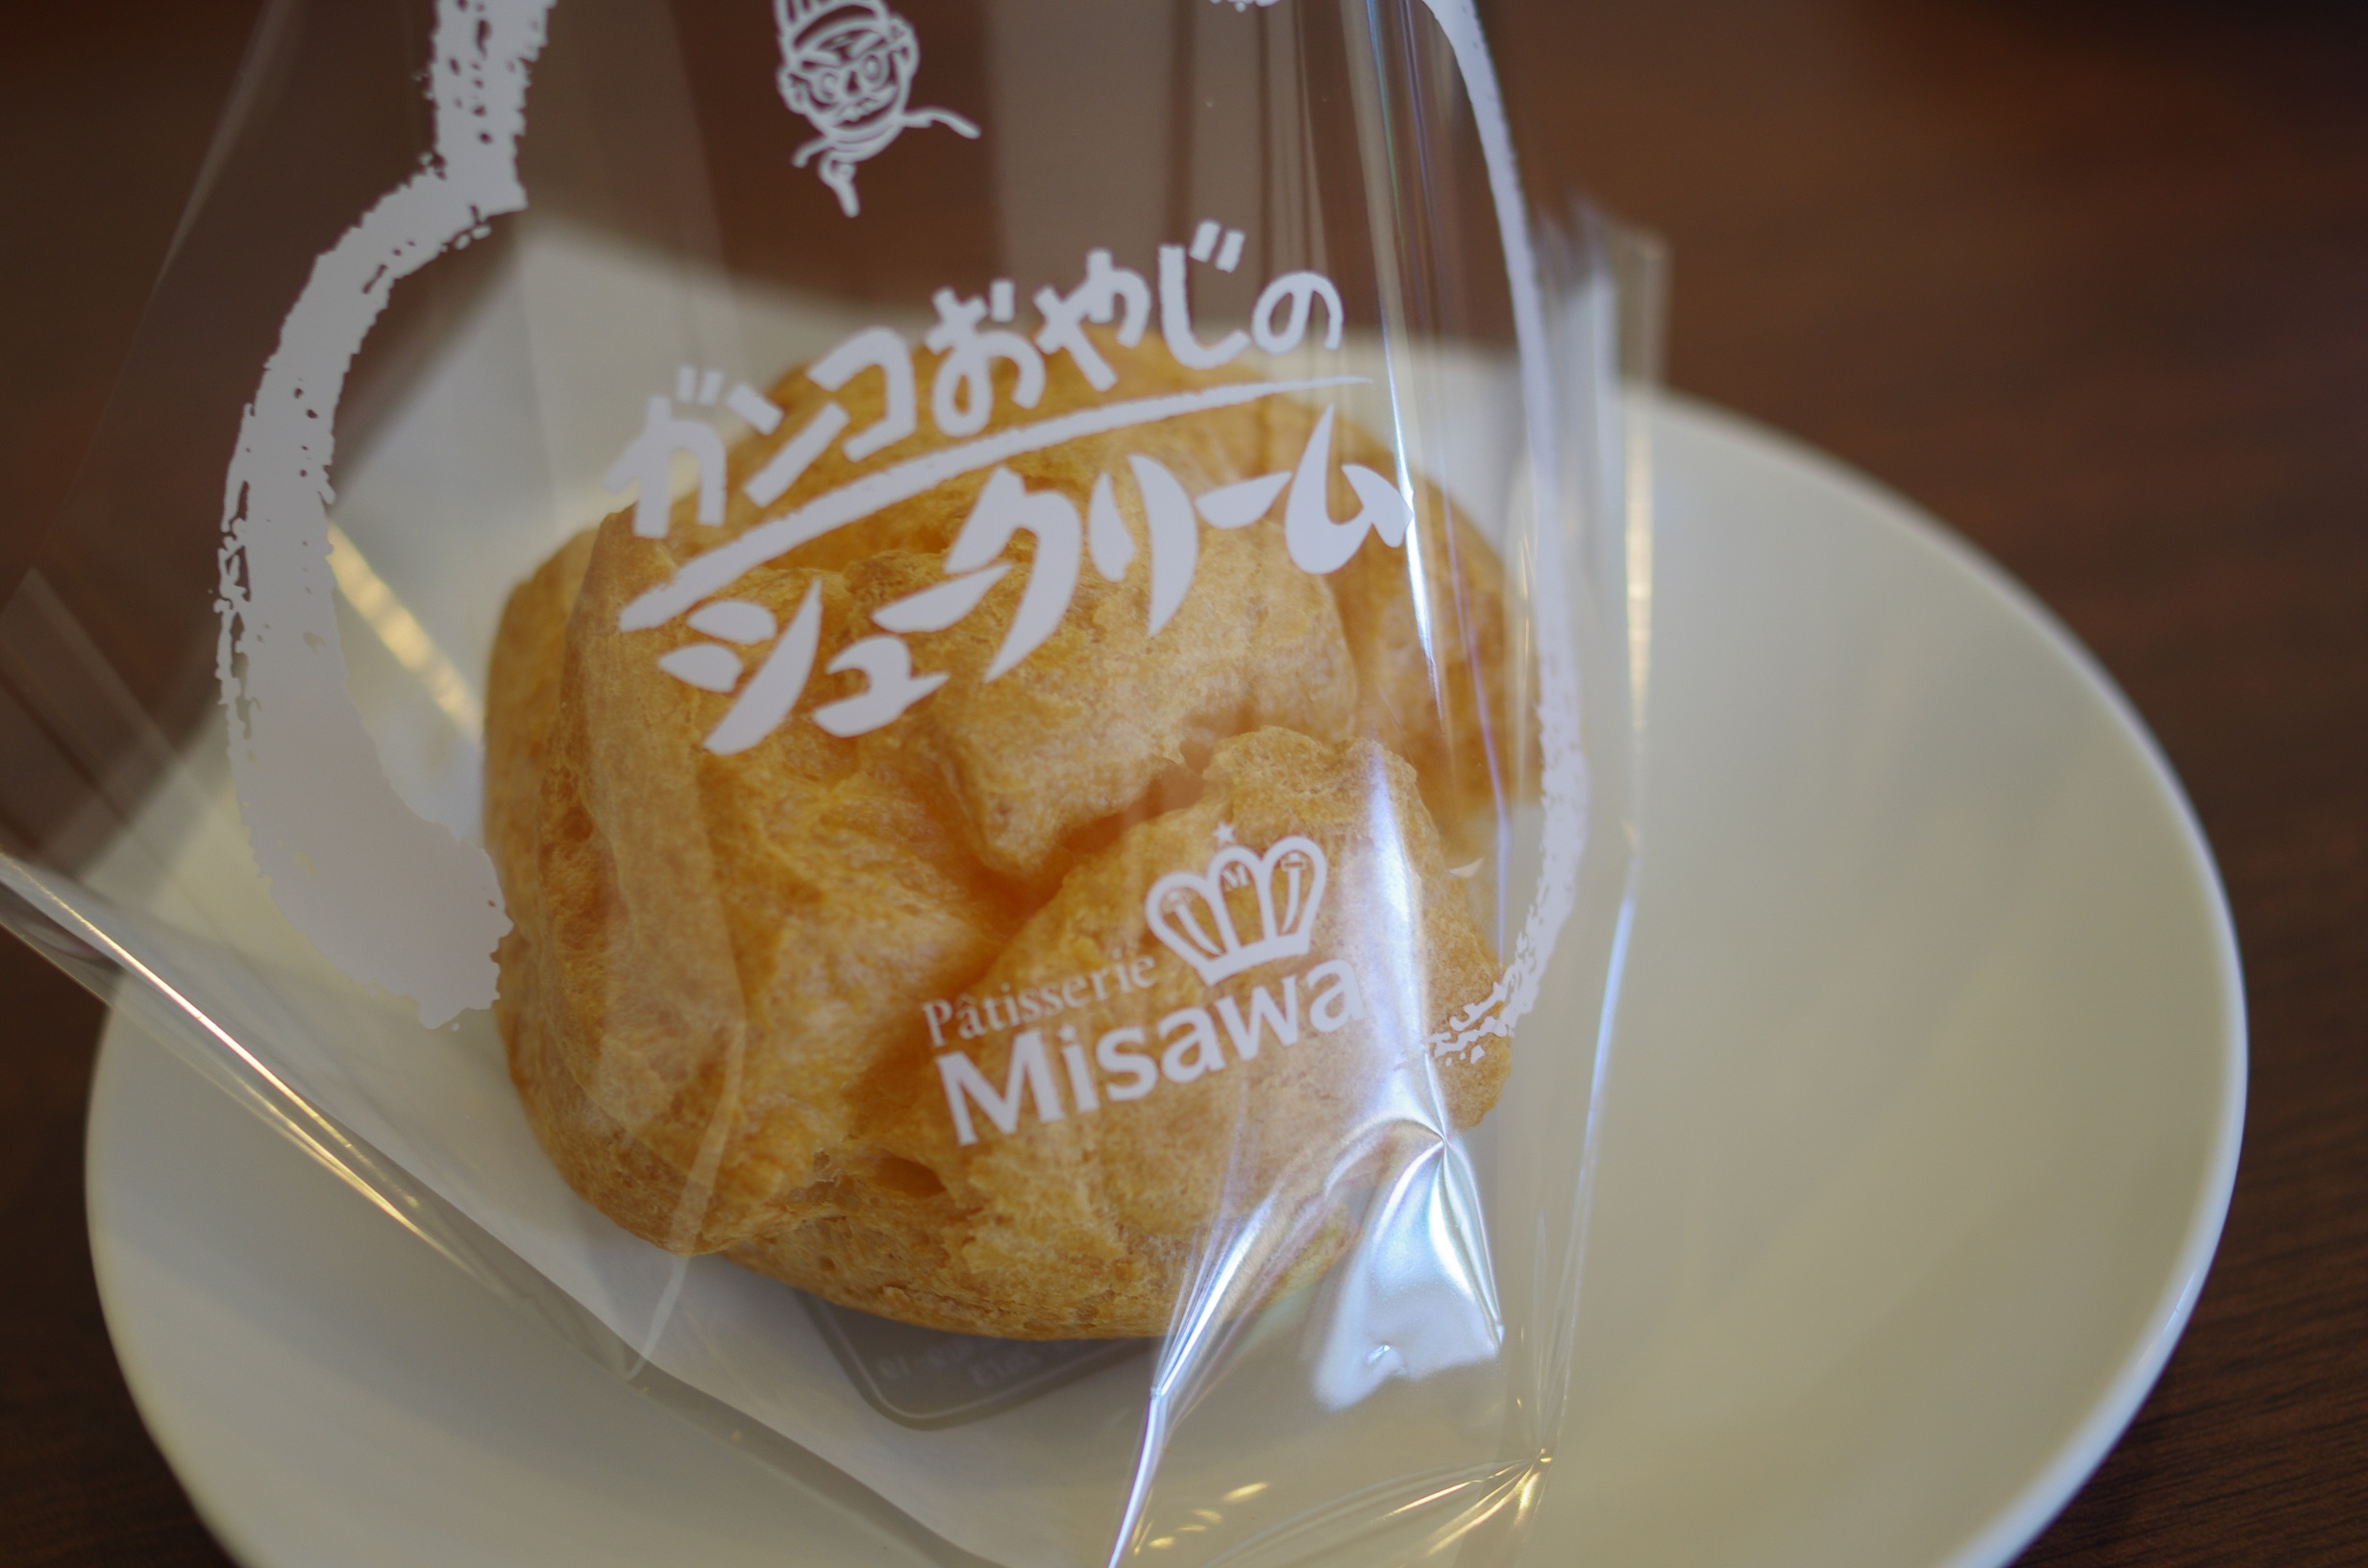 十和田で愛され続けて60年以上 老舗菓子店 Patisserie Misawa 青森の魅力